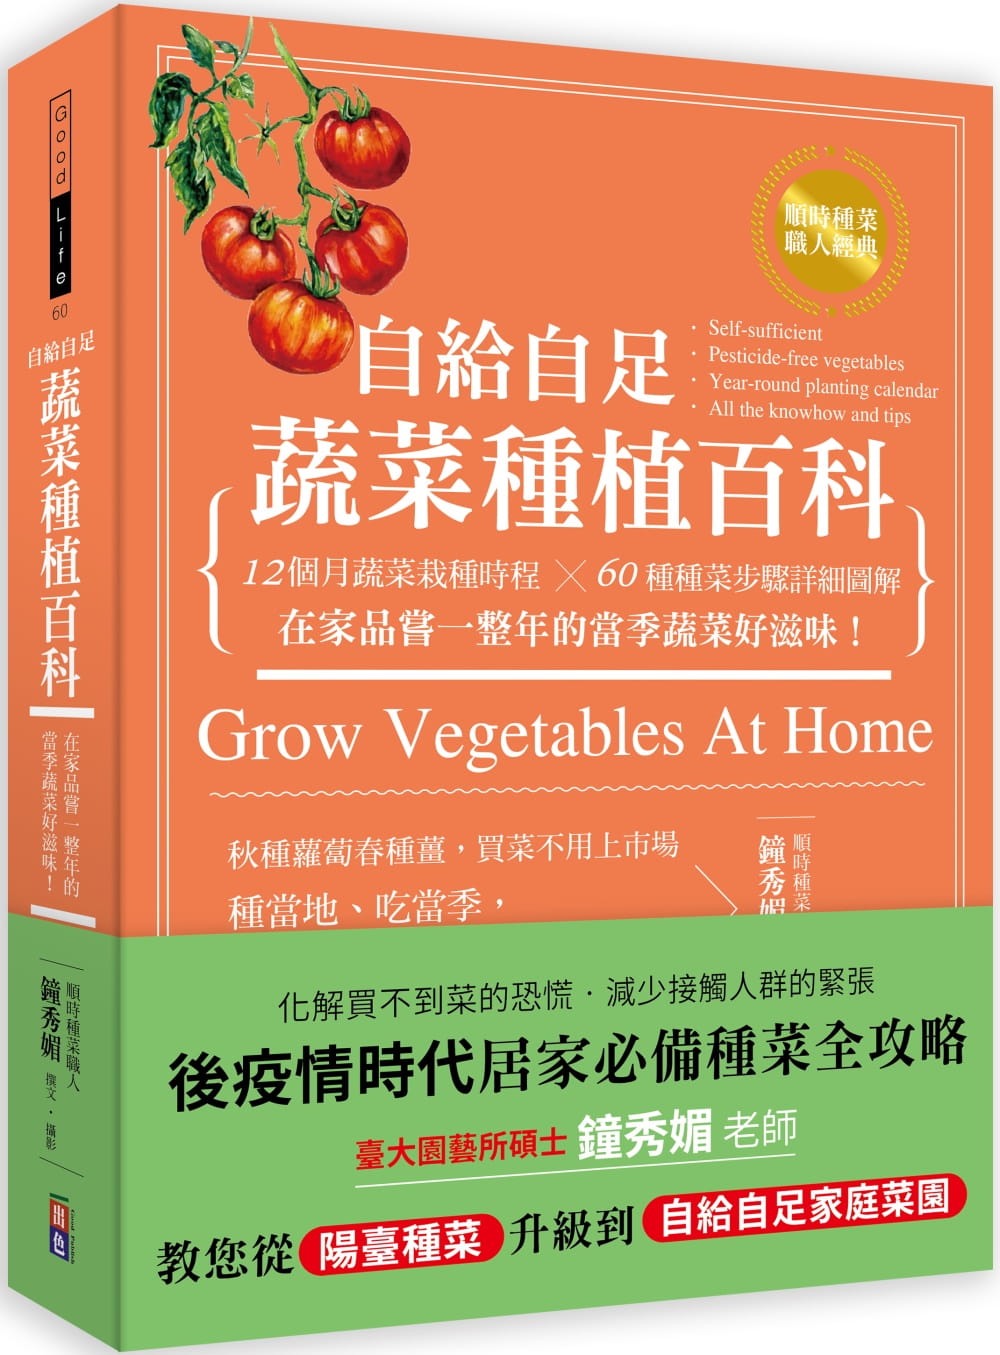 预售 钟秀媚 自给自足 蔬菜种植百科：12个月蔬菜栽种时程╳60种种菜步骤详细图解，在家品尝一整年的当季蔬菜好滋味！ 出色文化